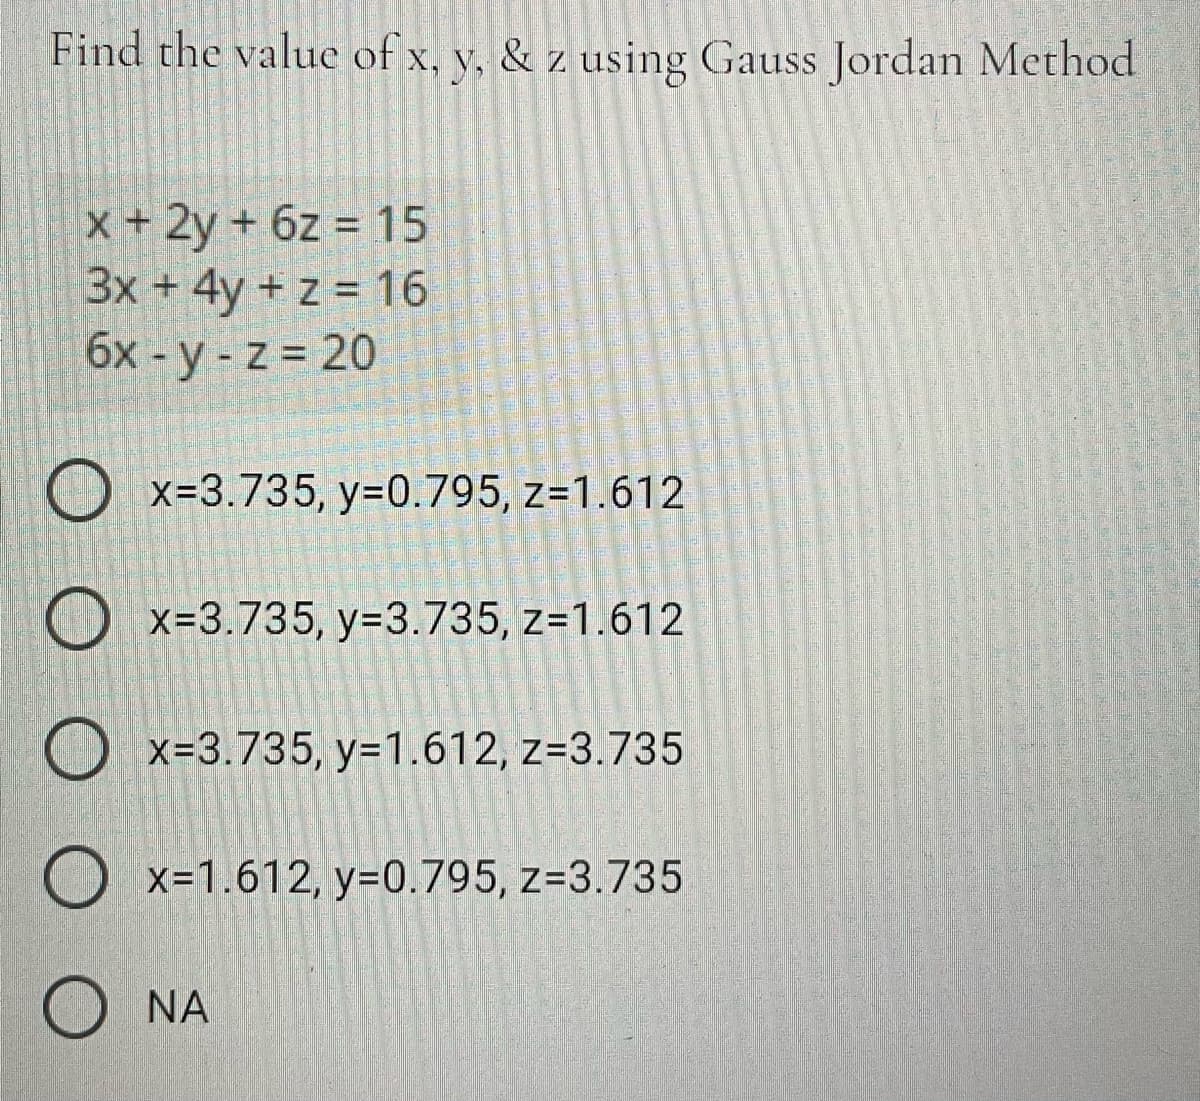 Find the value of x, y, & z using Gauss Jordan Method
x+ 2y + 6z = 15
3x + 4y + z = 16
6x - y - z = 20
O x=3.735, y=0.795, z=1.612
O x=3.735, y=3.735, z=1.612
O x=3.735, y=1.612, z=3.735
O x=1.612, y=0.795, z=3.735
O NA
營灣警皇
型響堂
道
